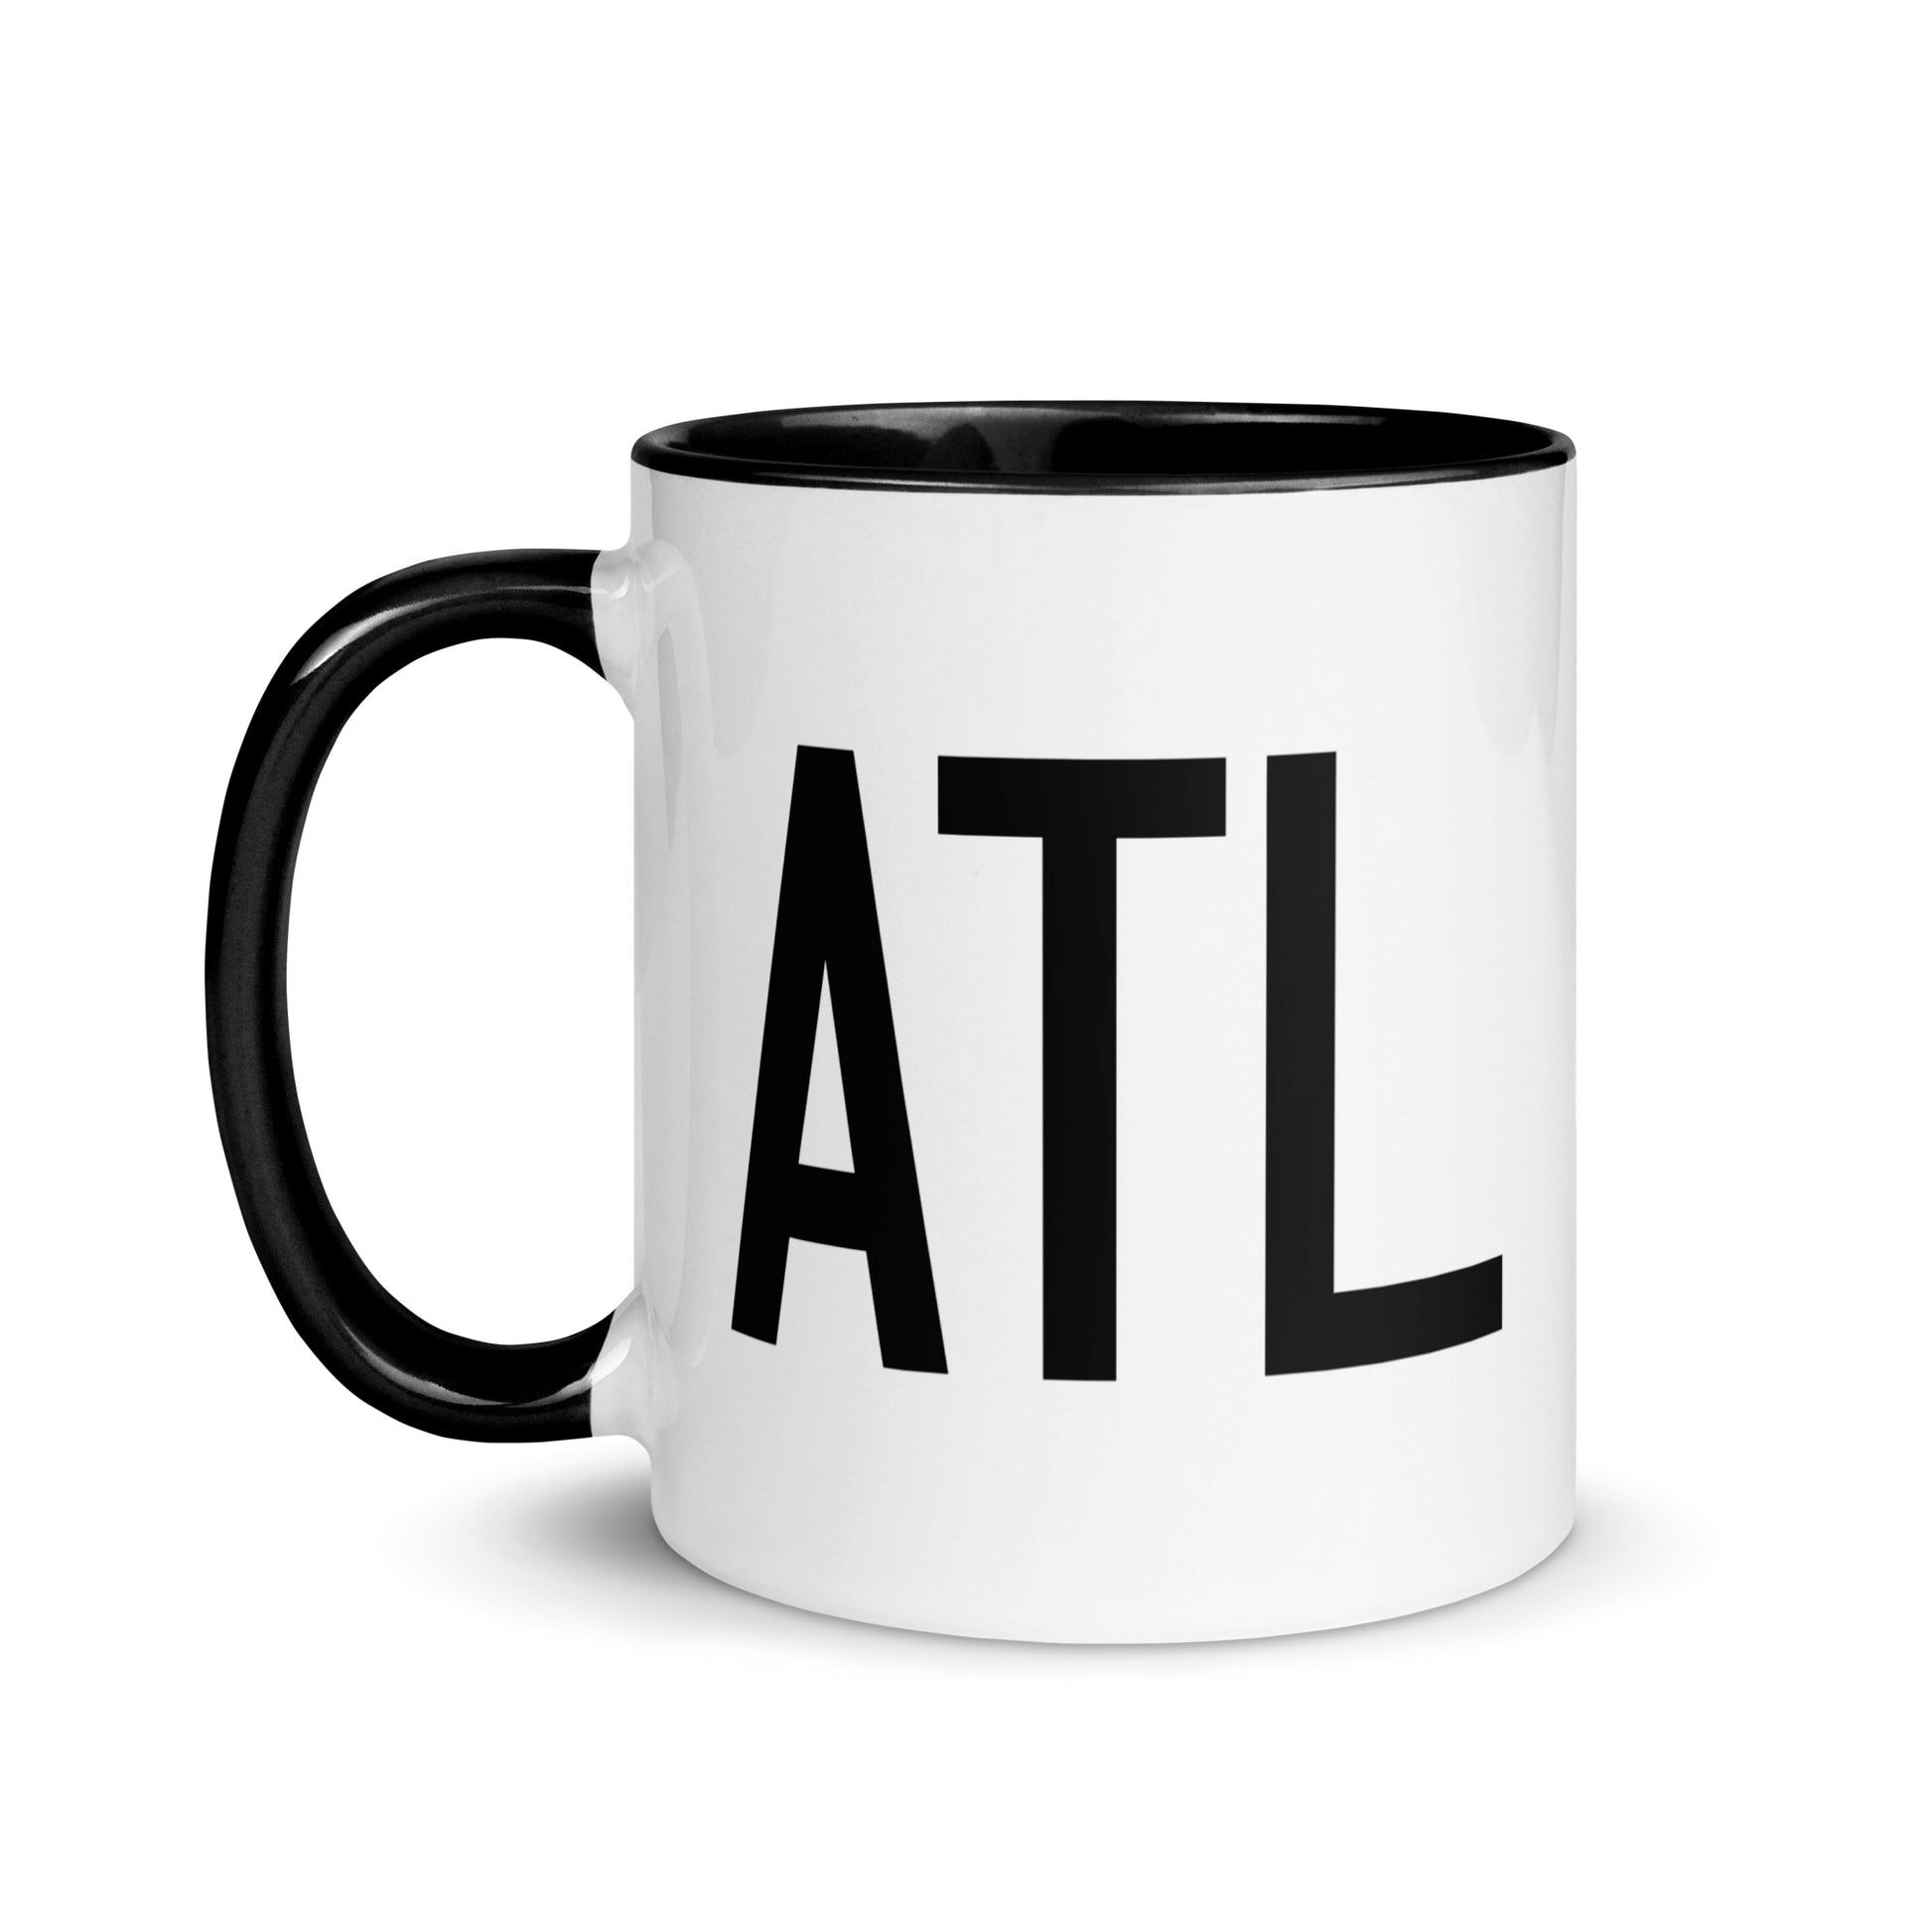 Aviation-Theme Coffee Mug - Black • ATL Atlanta • YHM Designs - Image 03